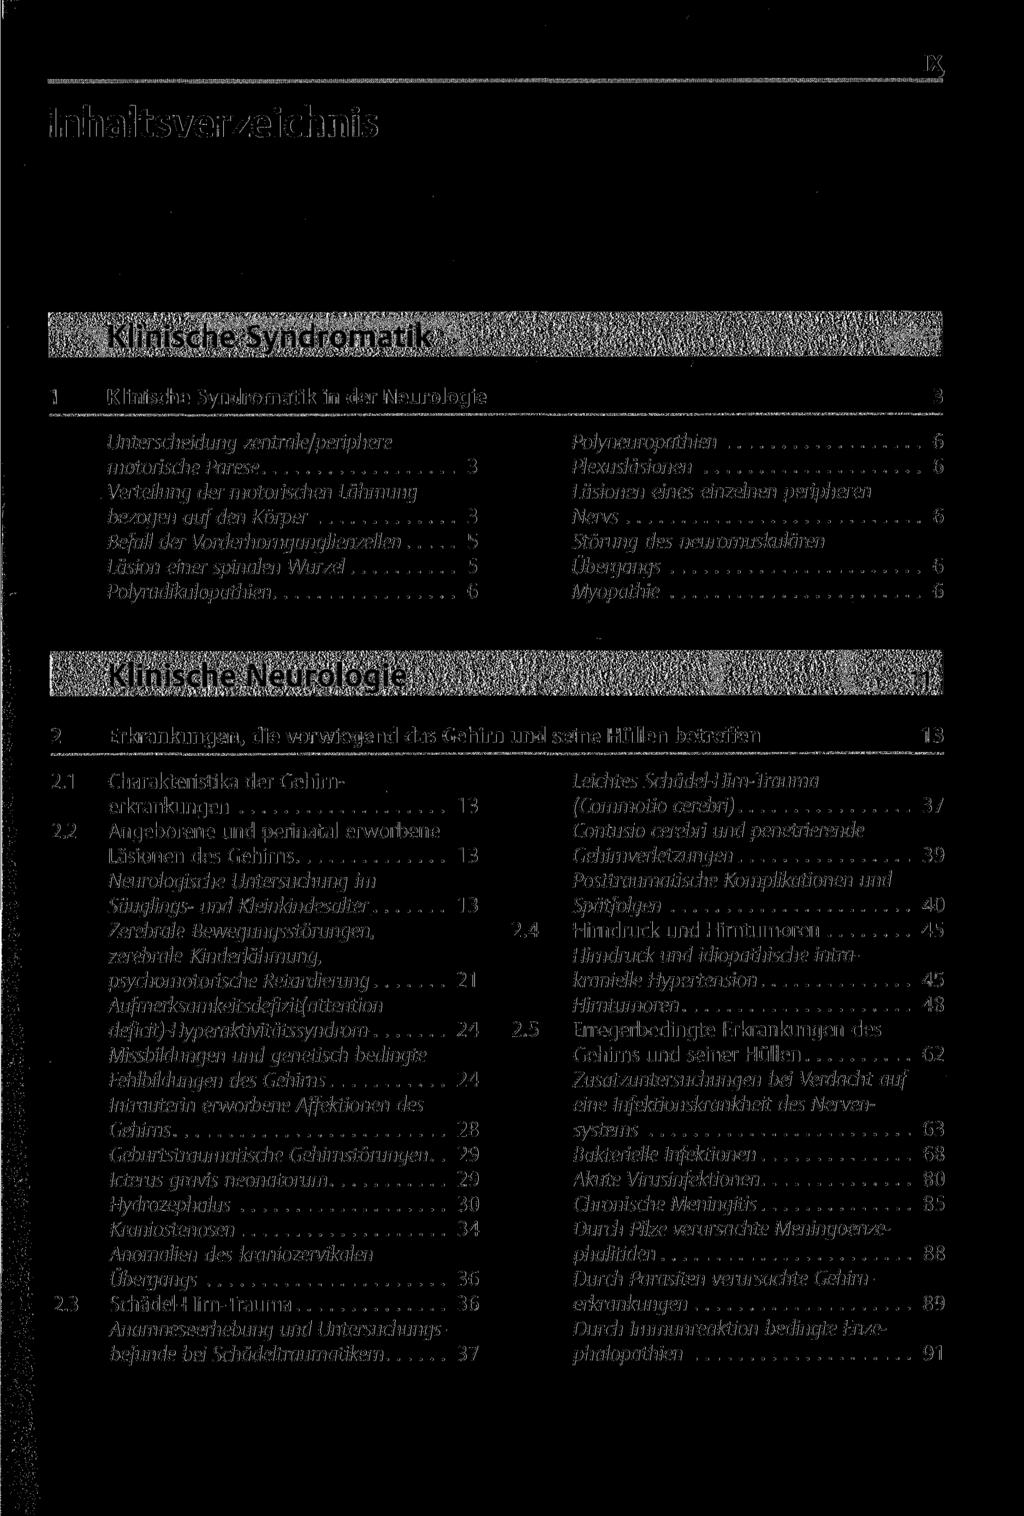 Inhaltsverzeichnis ix, Klinische Syndromatil 1 Klinische Syndromatik in der Neurologie Unterscheidung zentrale/periphere motorische Parese 3 Verteilung der motorischen Lähmung bezogen auf den Körper